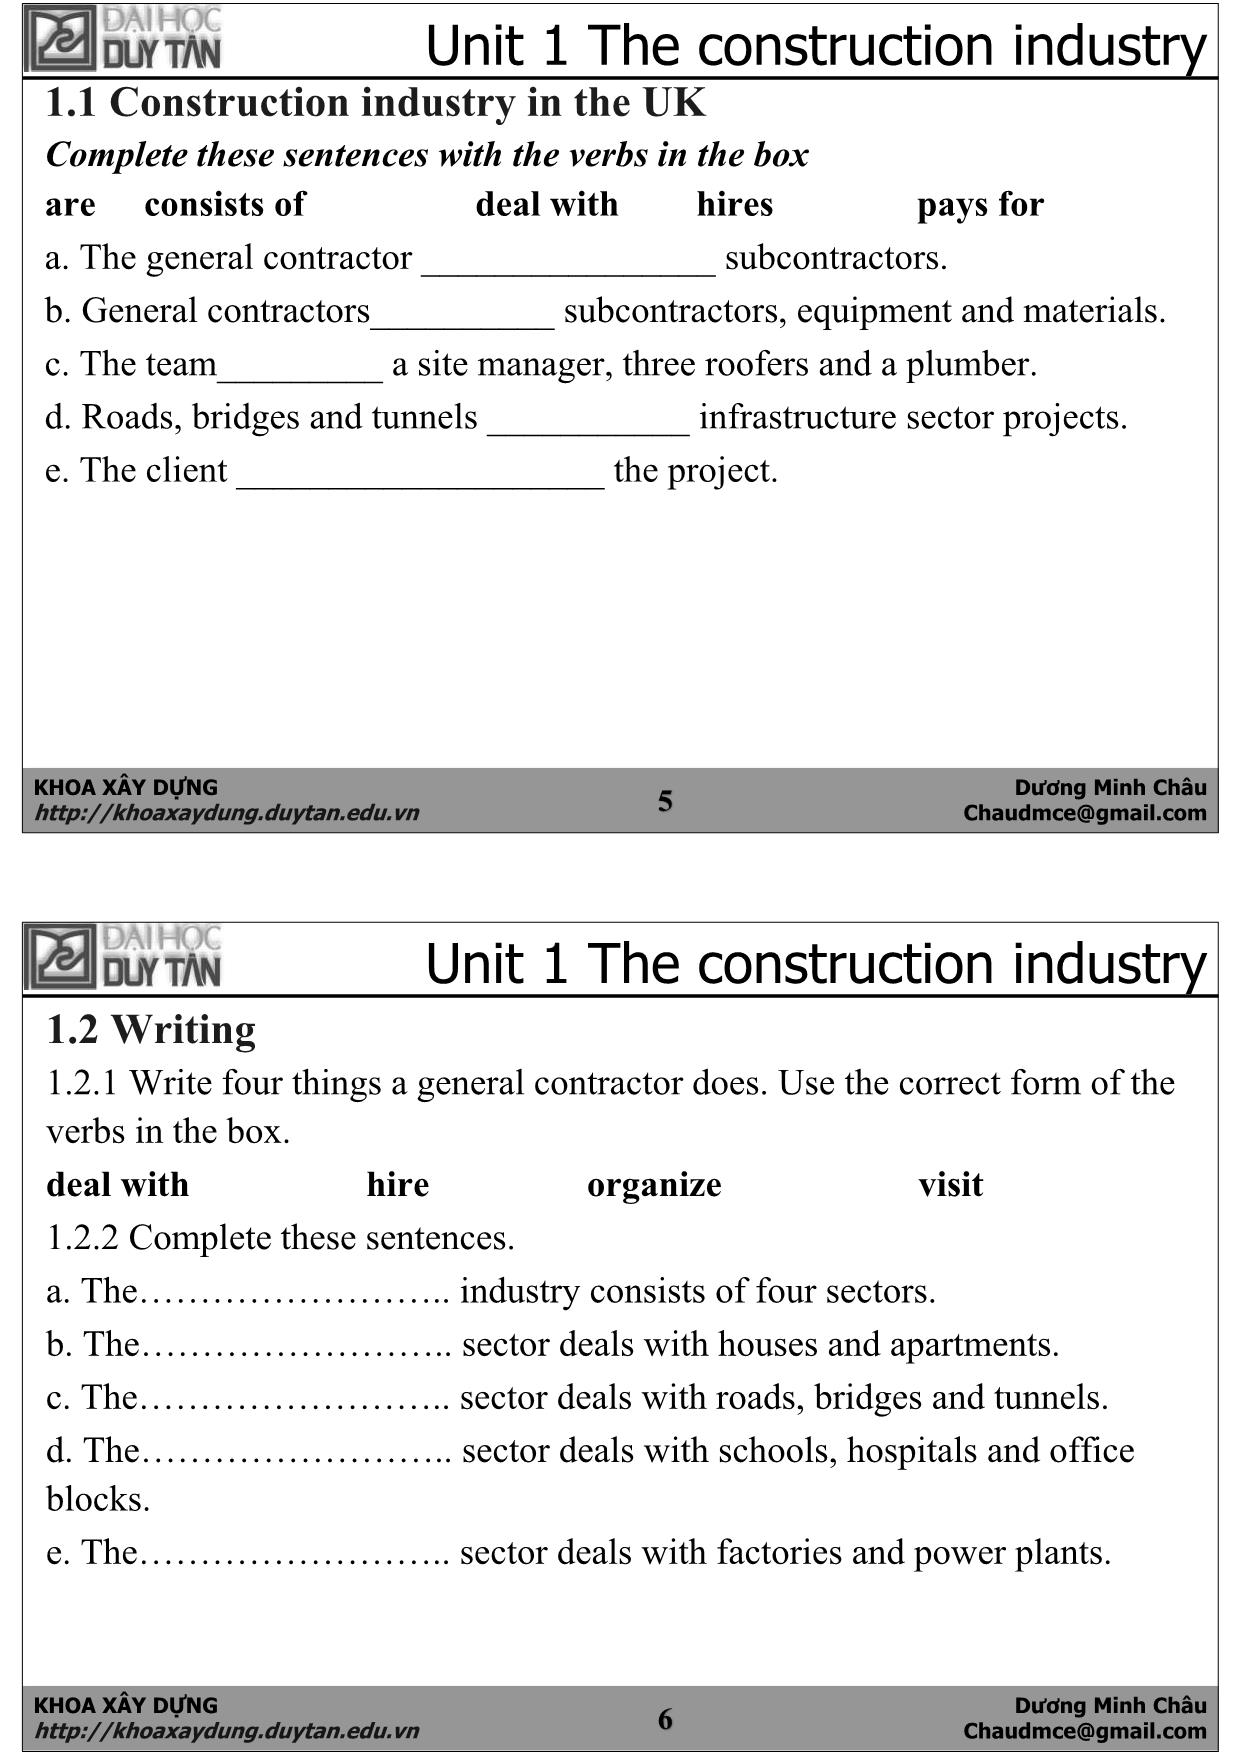 Bài giảng Anh văn chuyên ngành xây dựng - Dương Minh Châu trang 3